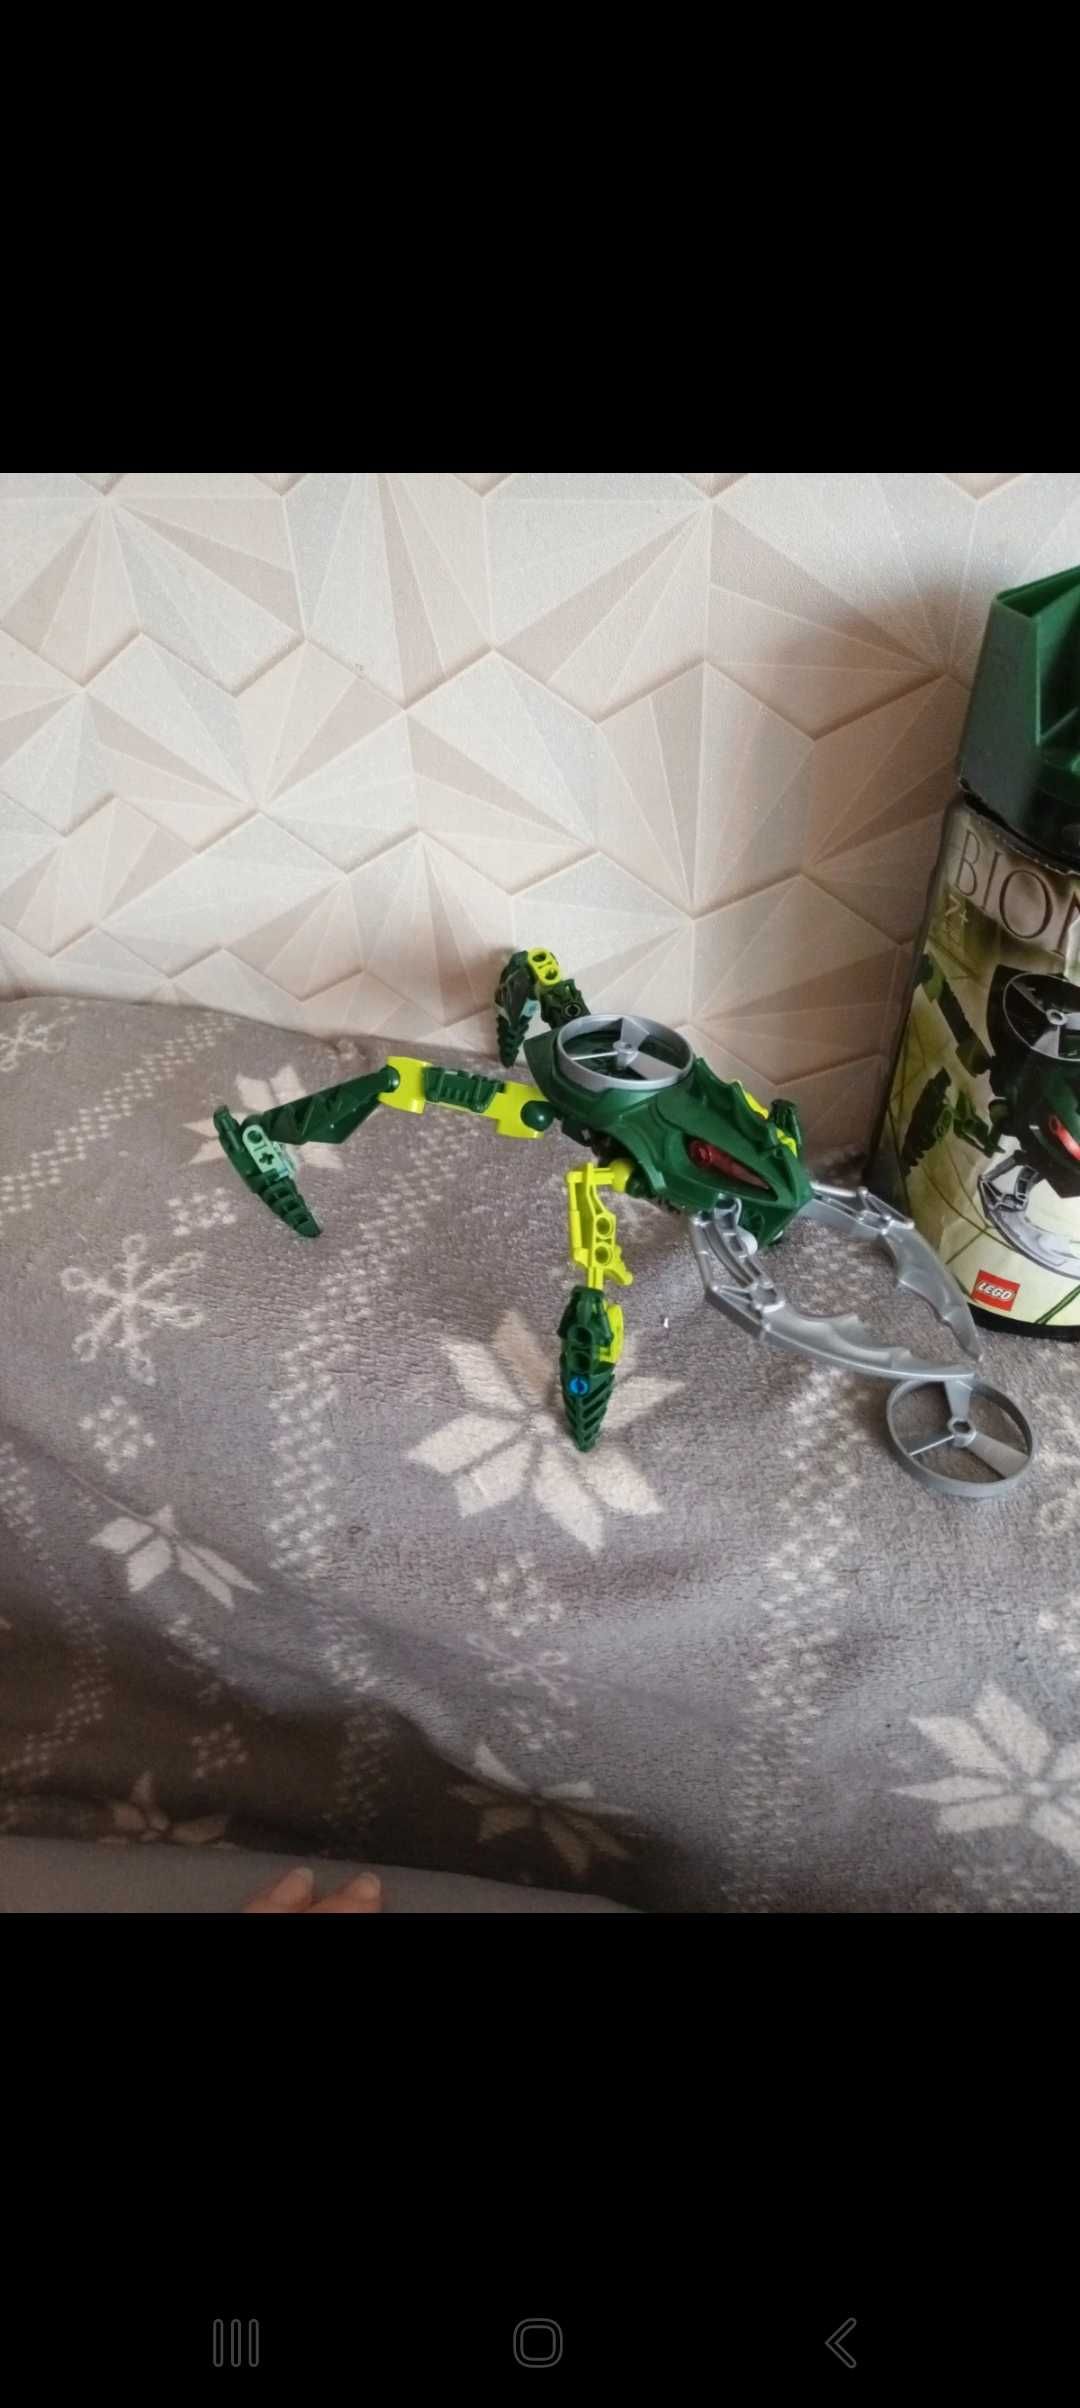 Keelerak Lego bionicle